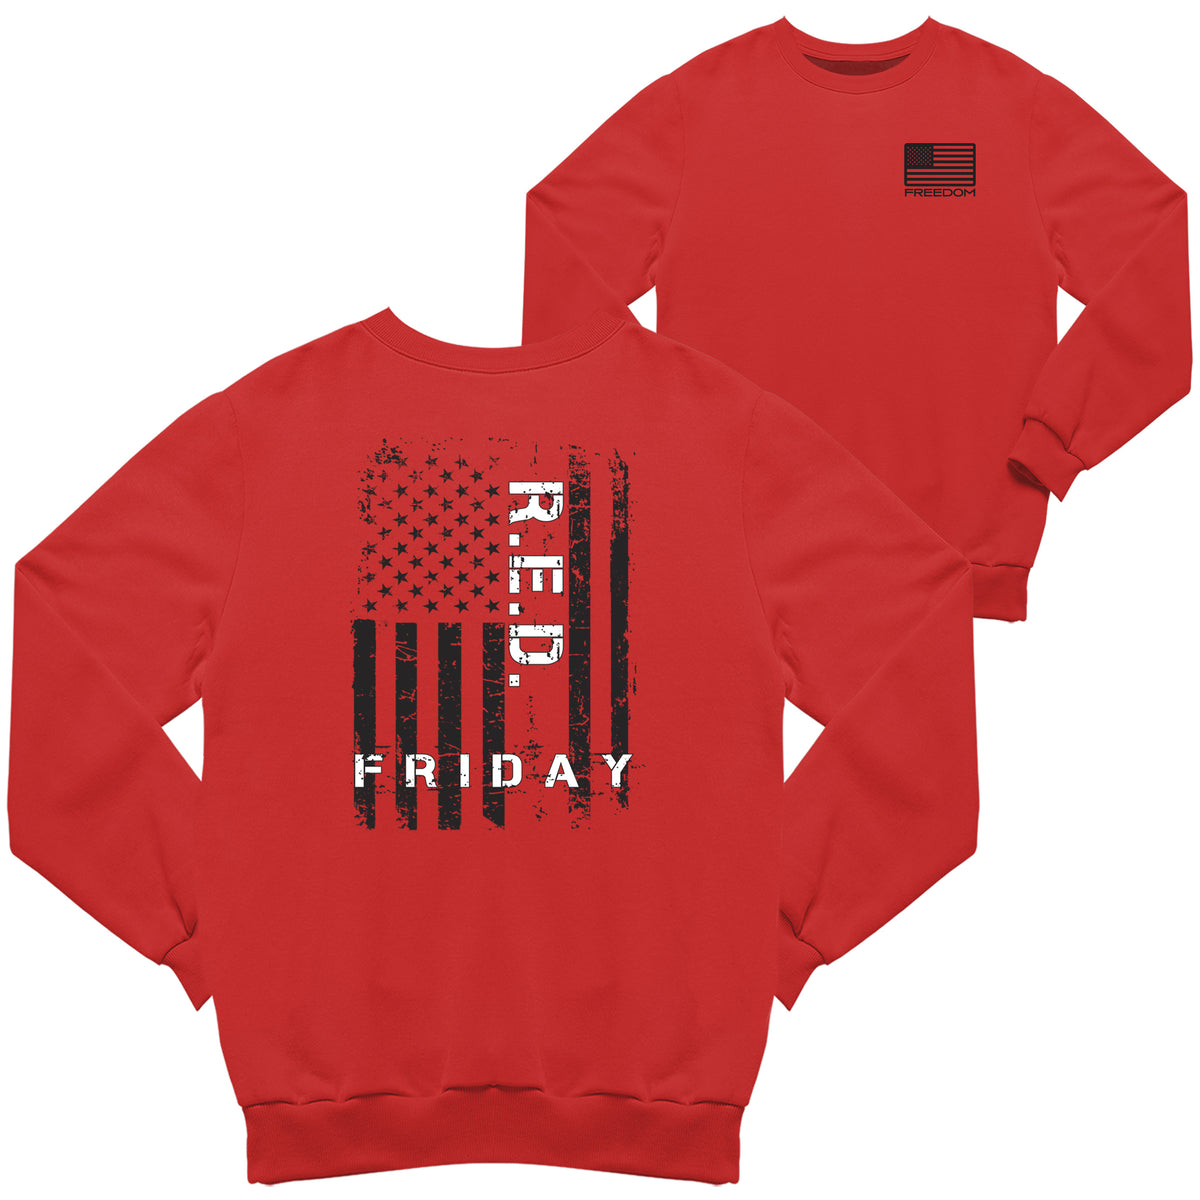 R.E.D Friday Flag 2-Sided Sweatshirt